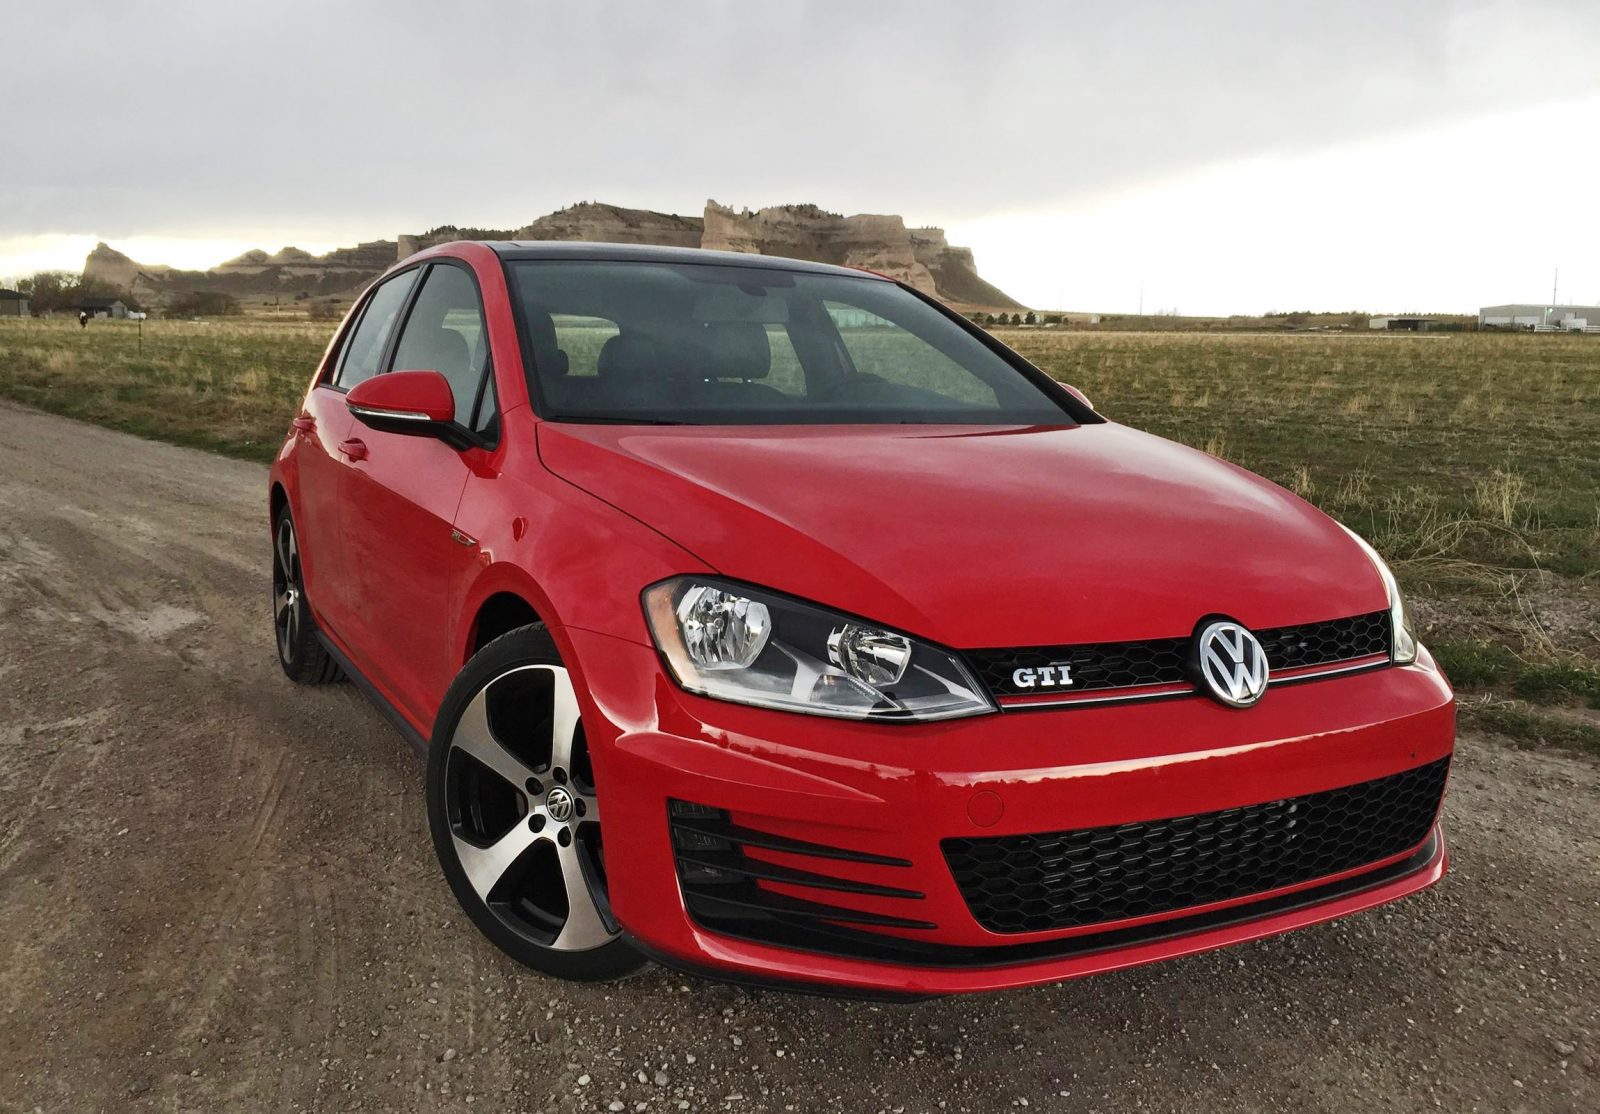 Road Test Review - 2016 Volkswagen Golf GTI Autobahn 6-Speed - By Tim